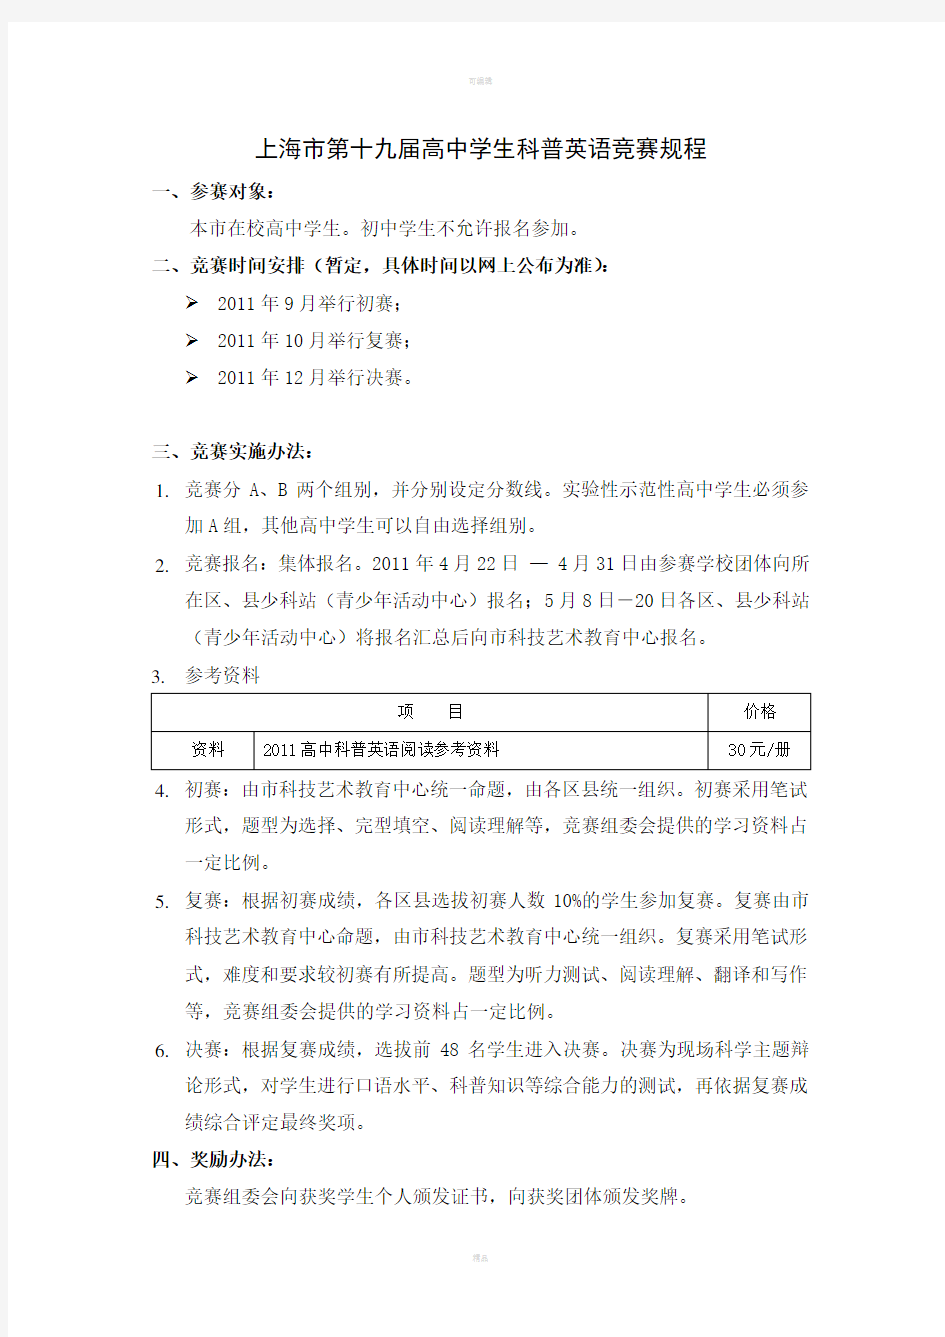 上海市第十九届高中学生科普英语竞赛规程